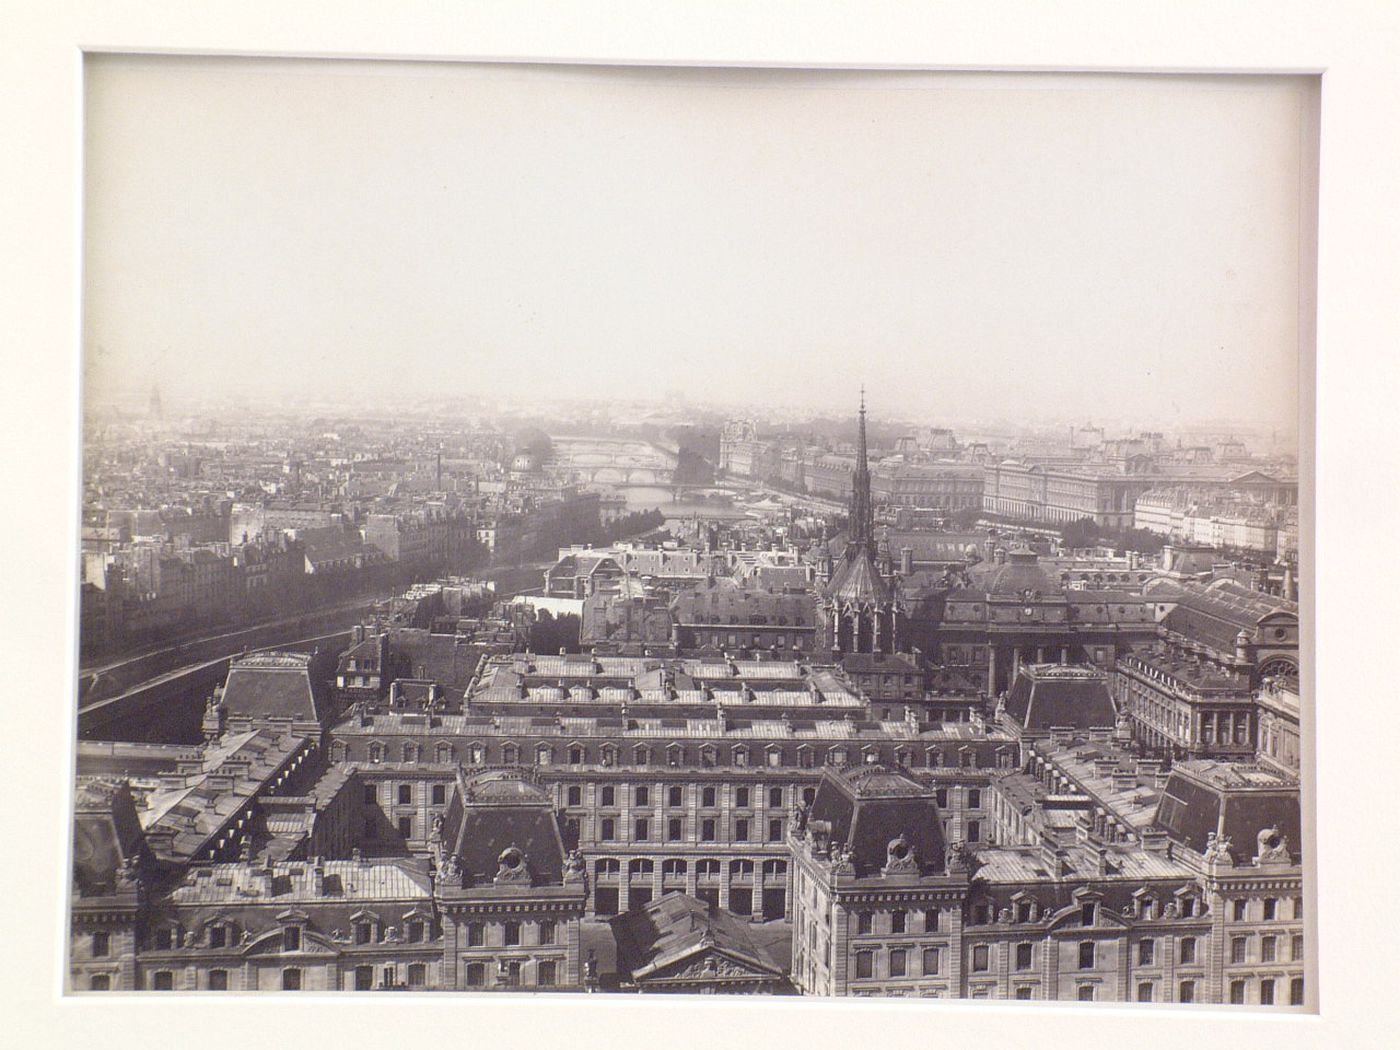 General view of Ile de la Cité, with Sainte Chapelle and Palais de Justice, Louvre in distance, possibly taken from spire of Notre-Dame, Paris, France